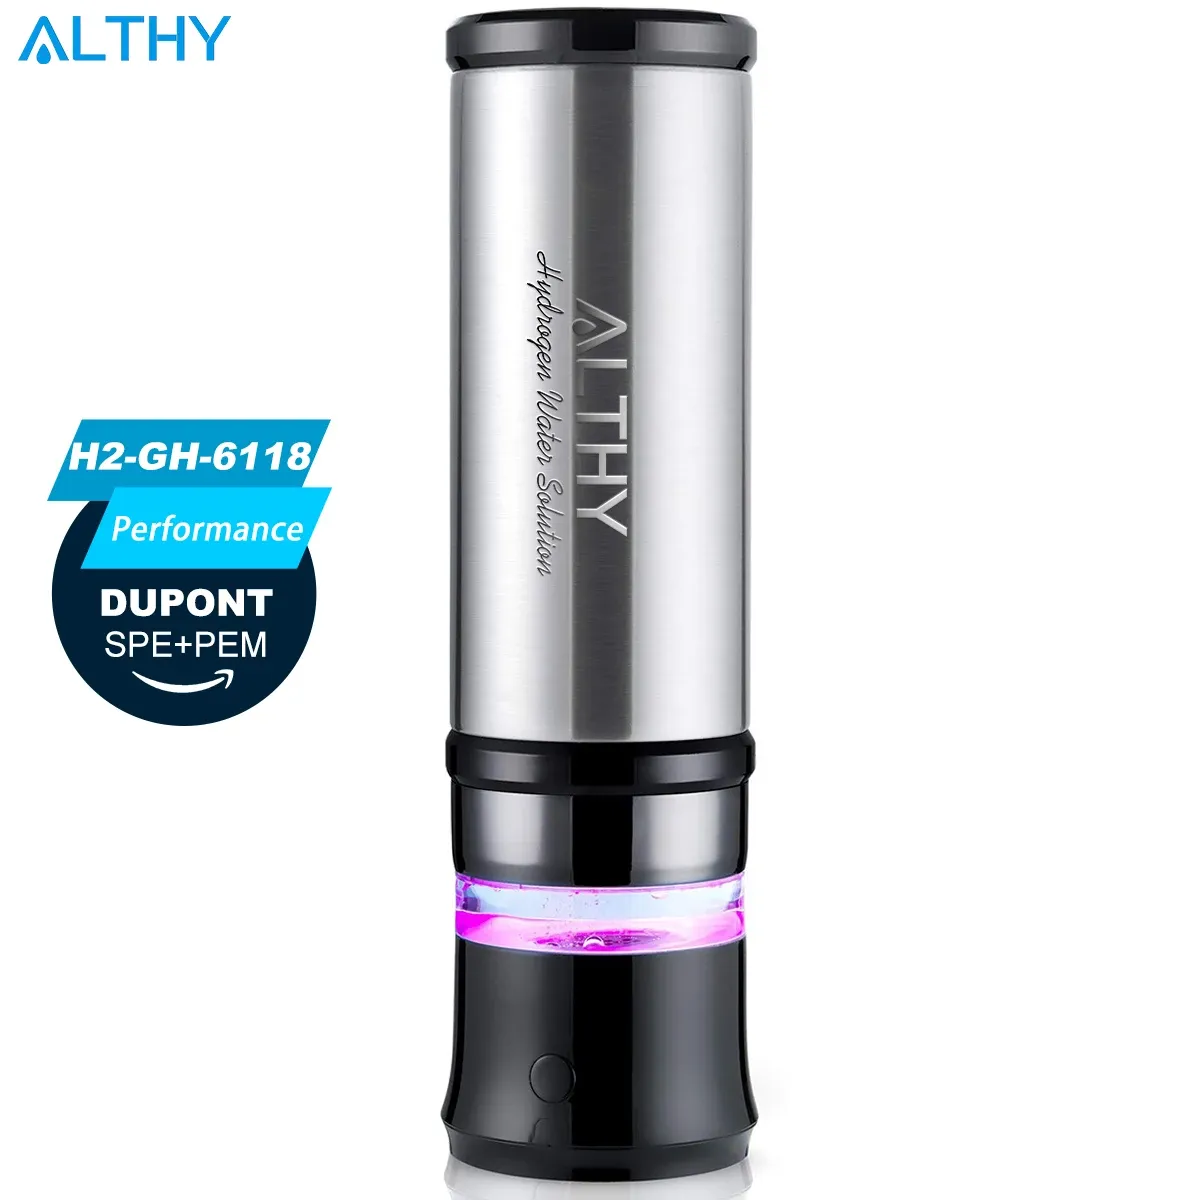 Botella Althy 2 en 1 Aislamiento de acero inoxidable Generador de botellas de agua de hidrógeno + desinfectante Generador DuPont SPE + PEM Cámara dual